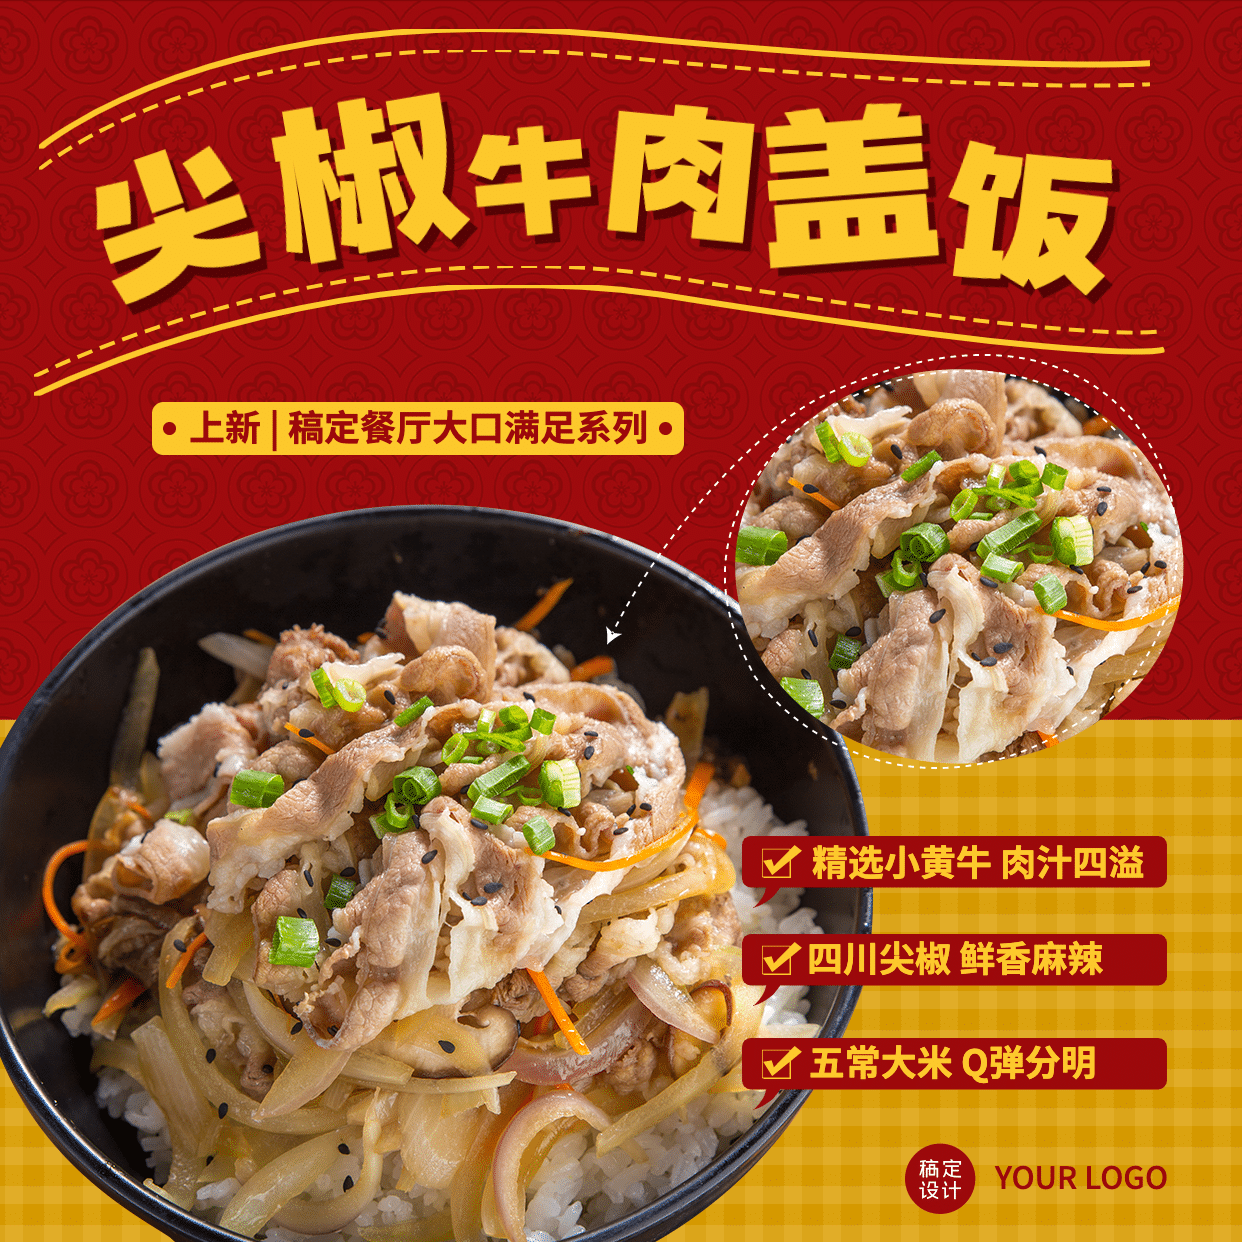 中式快餐新品上市方形海报预览效果